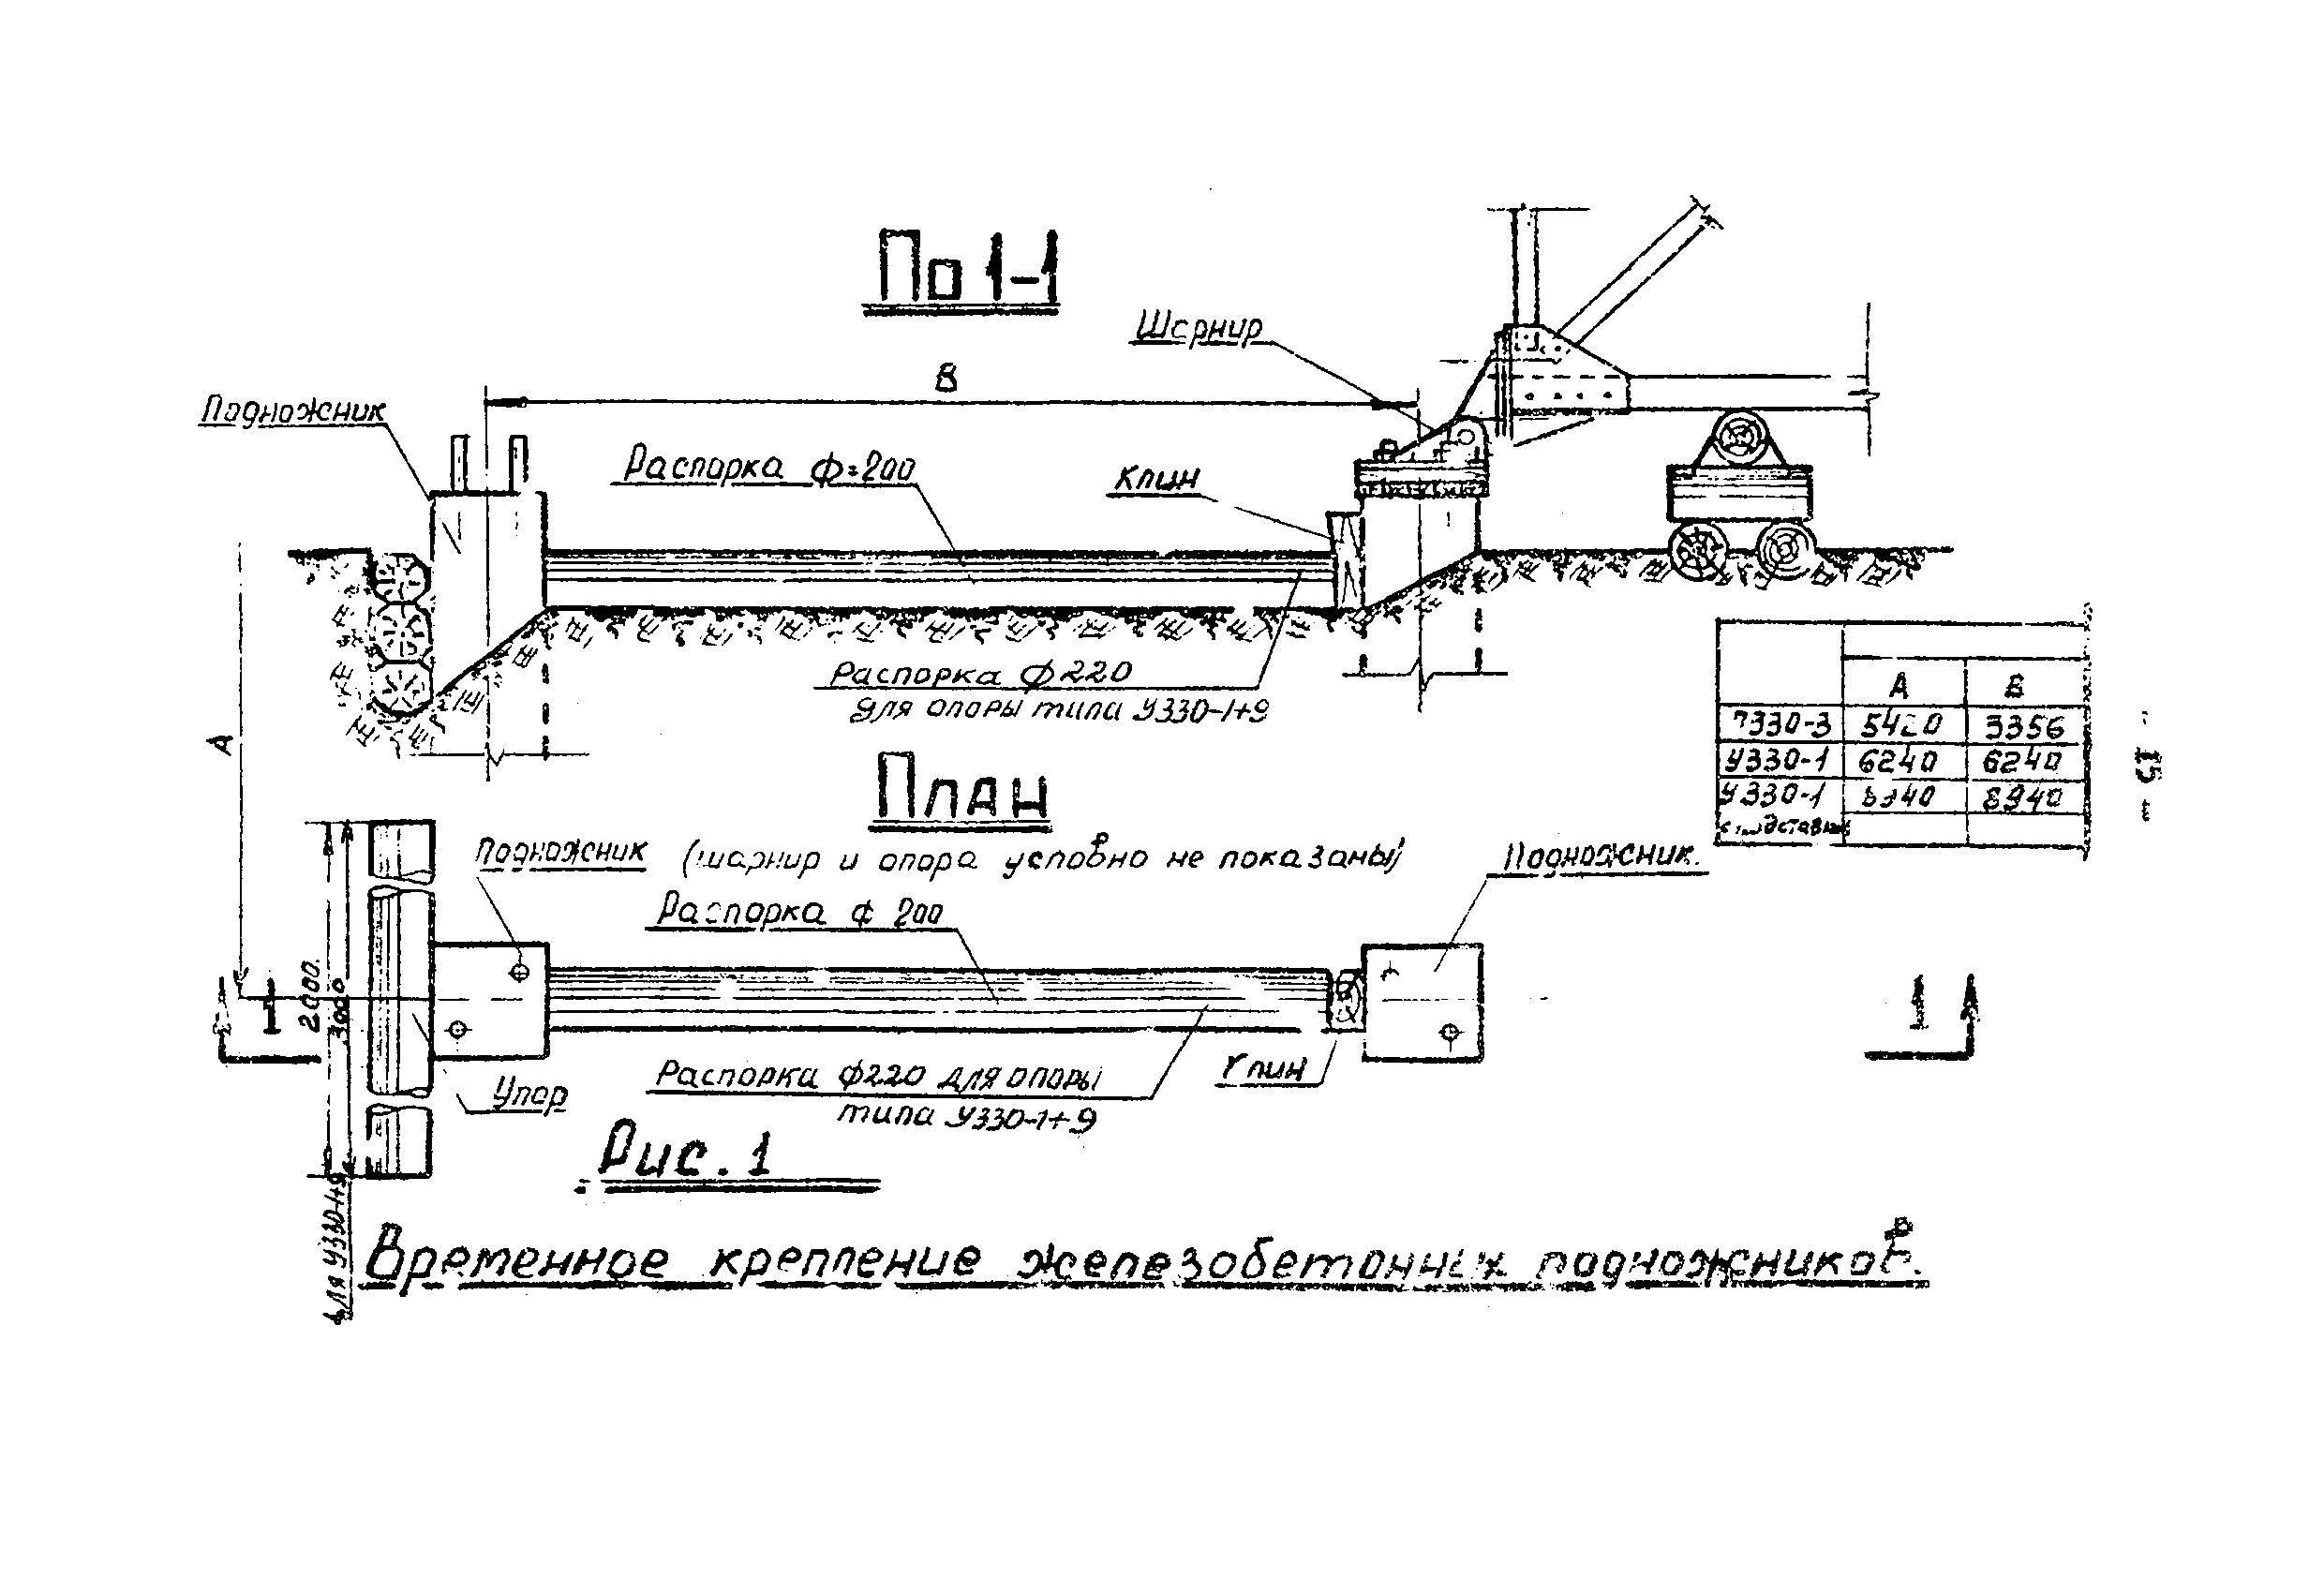 ТТК К-III-27-4